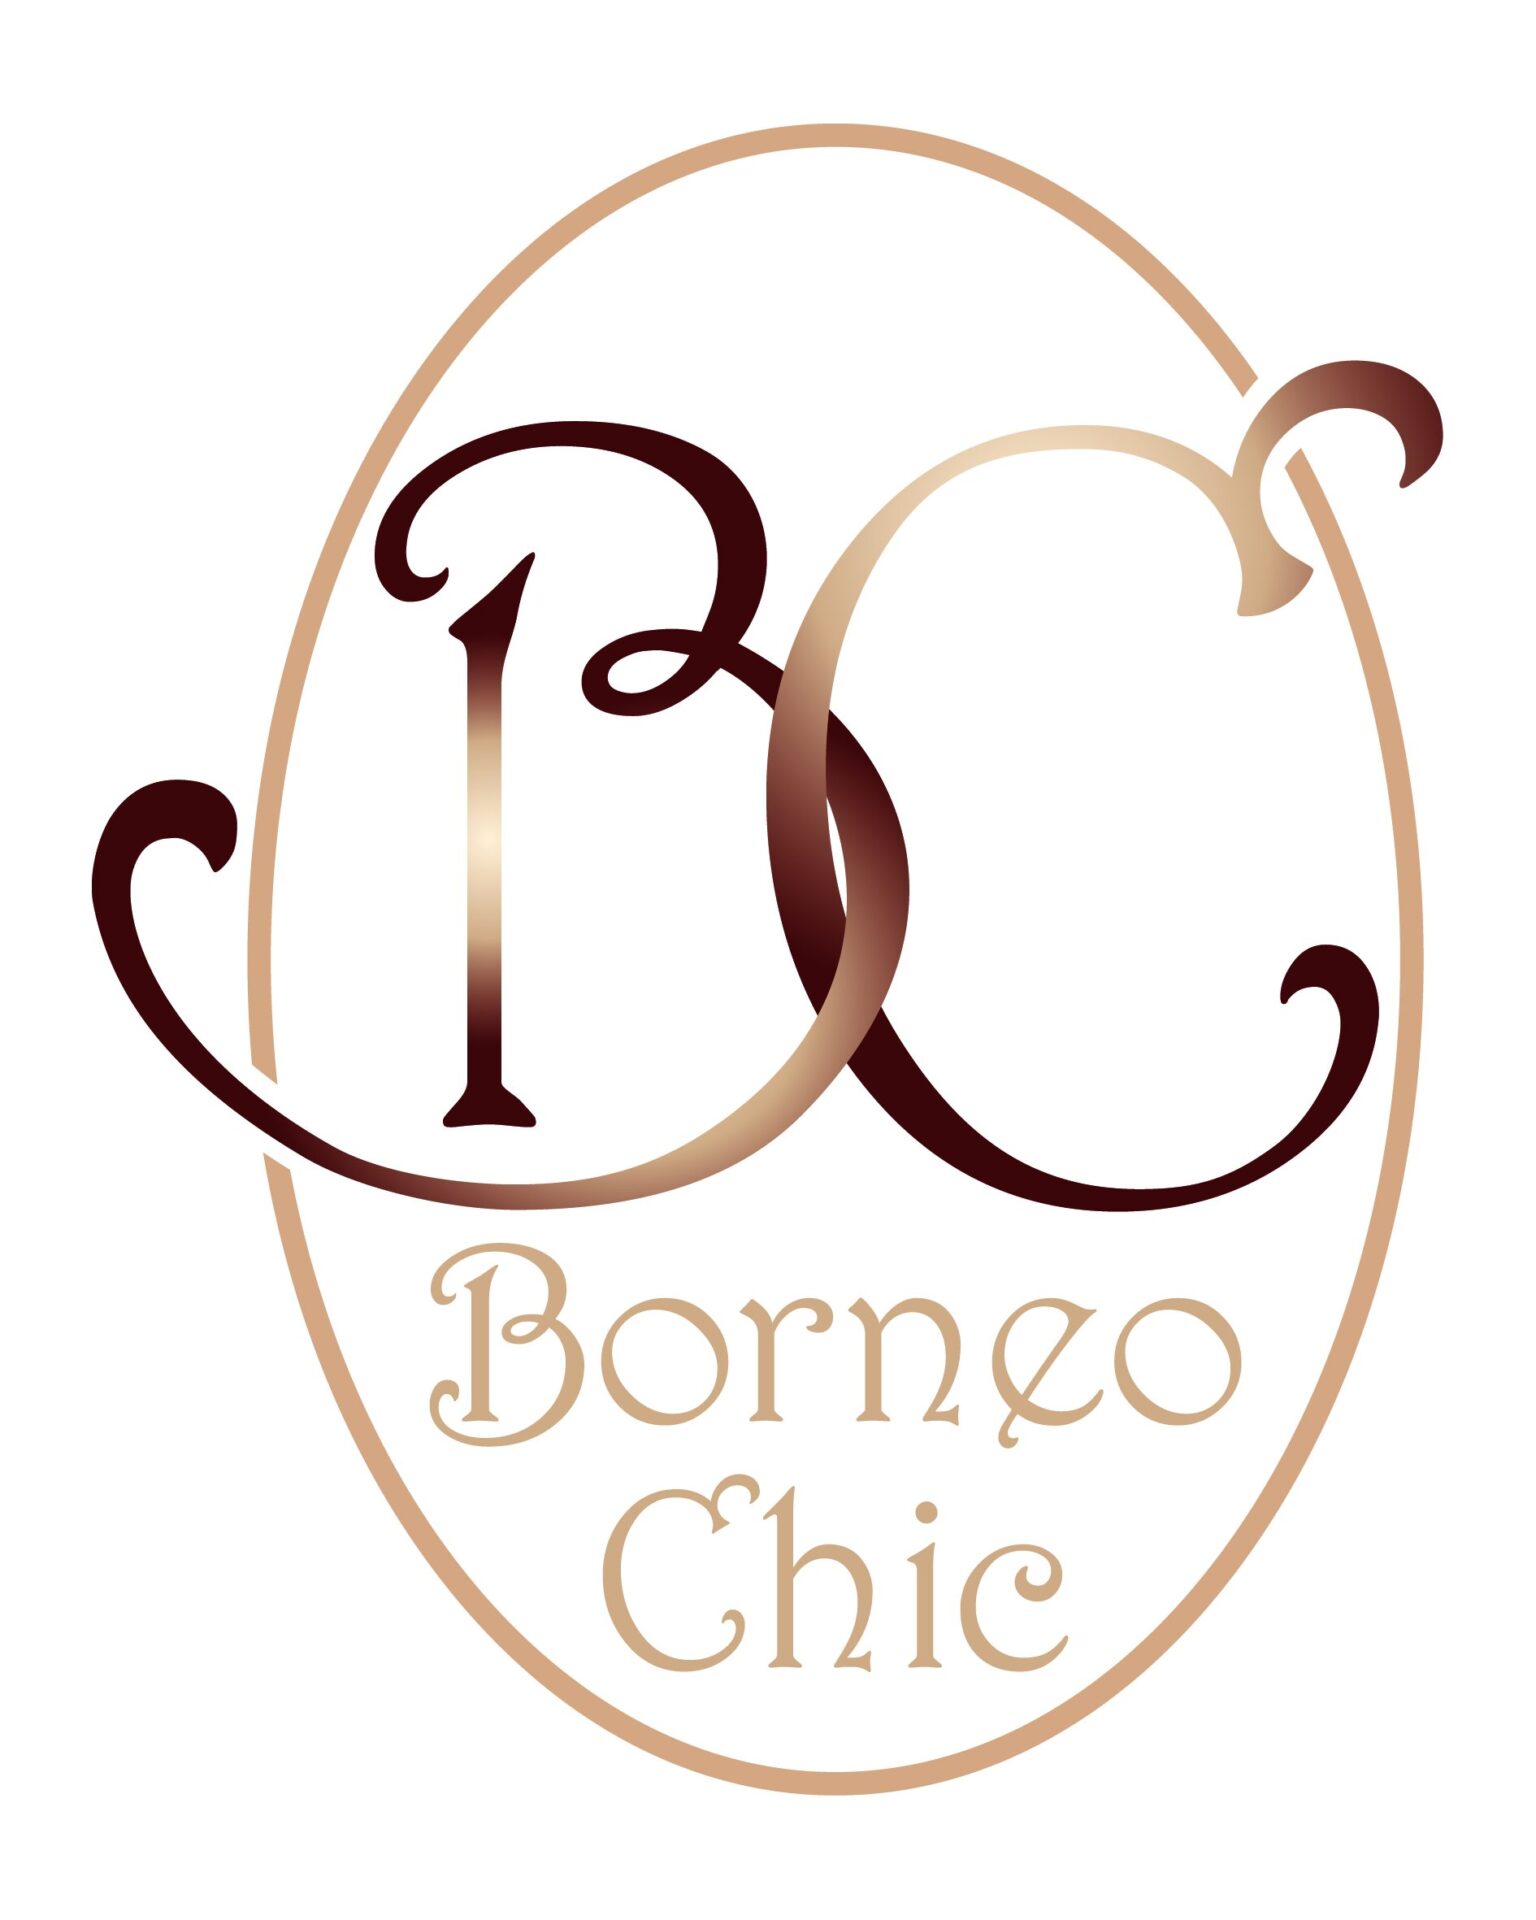 Borneo Chic